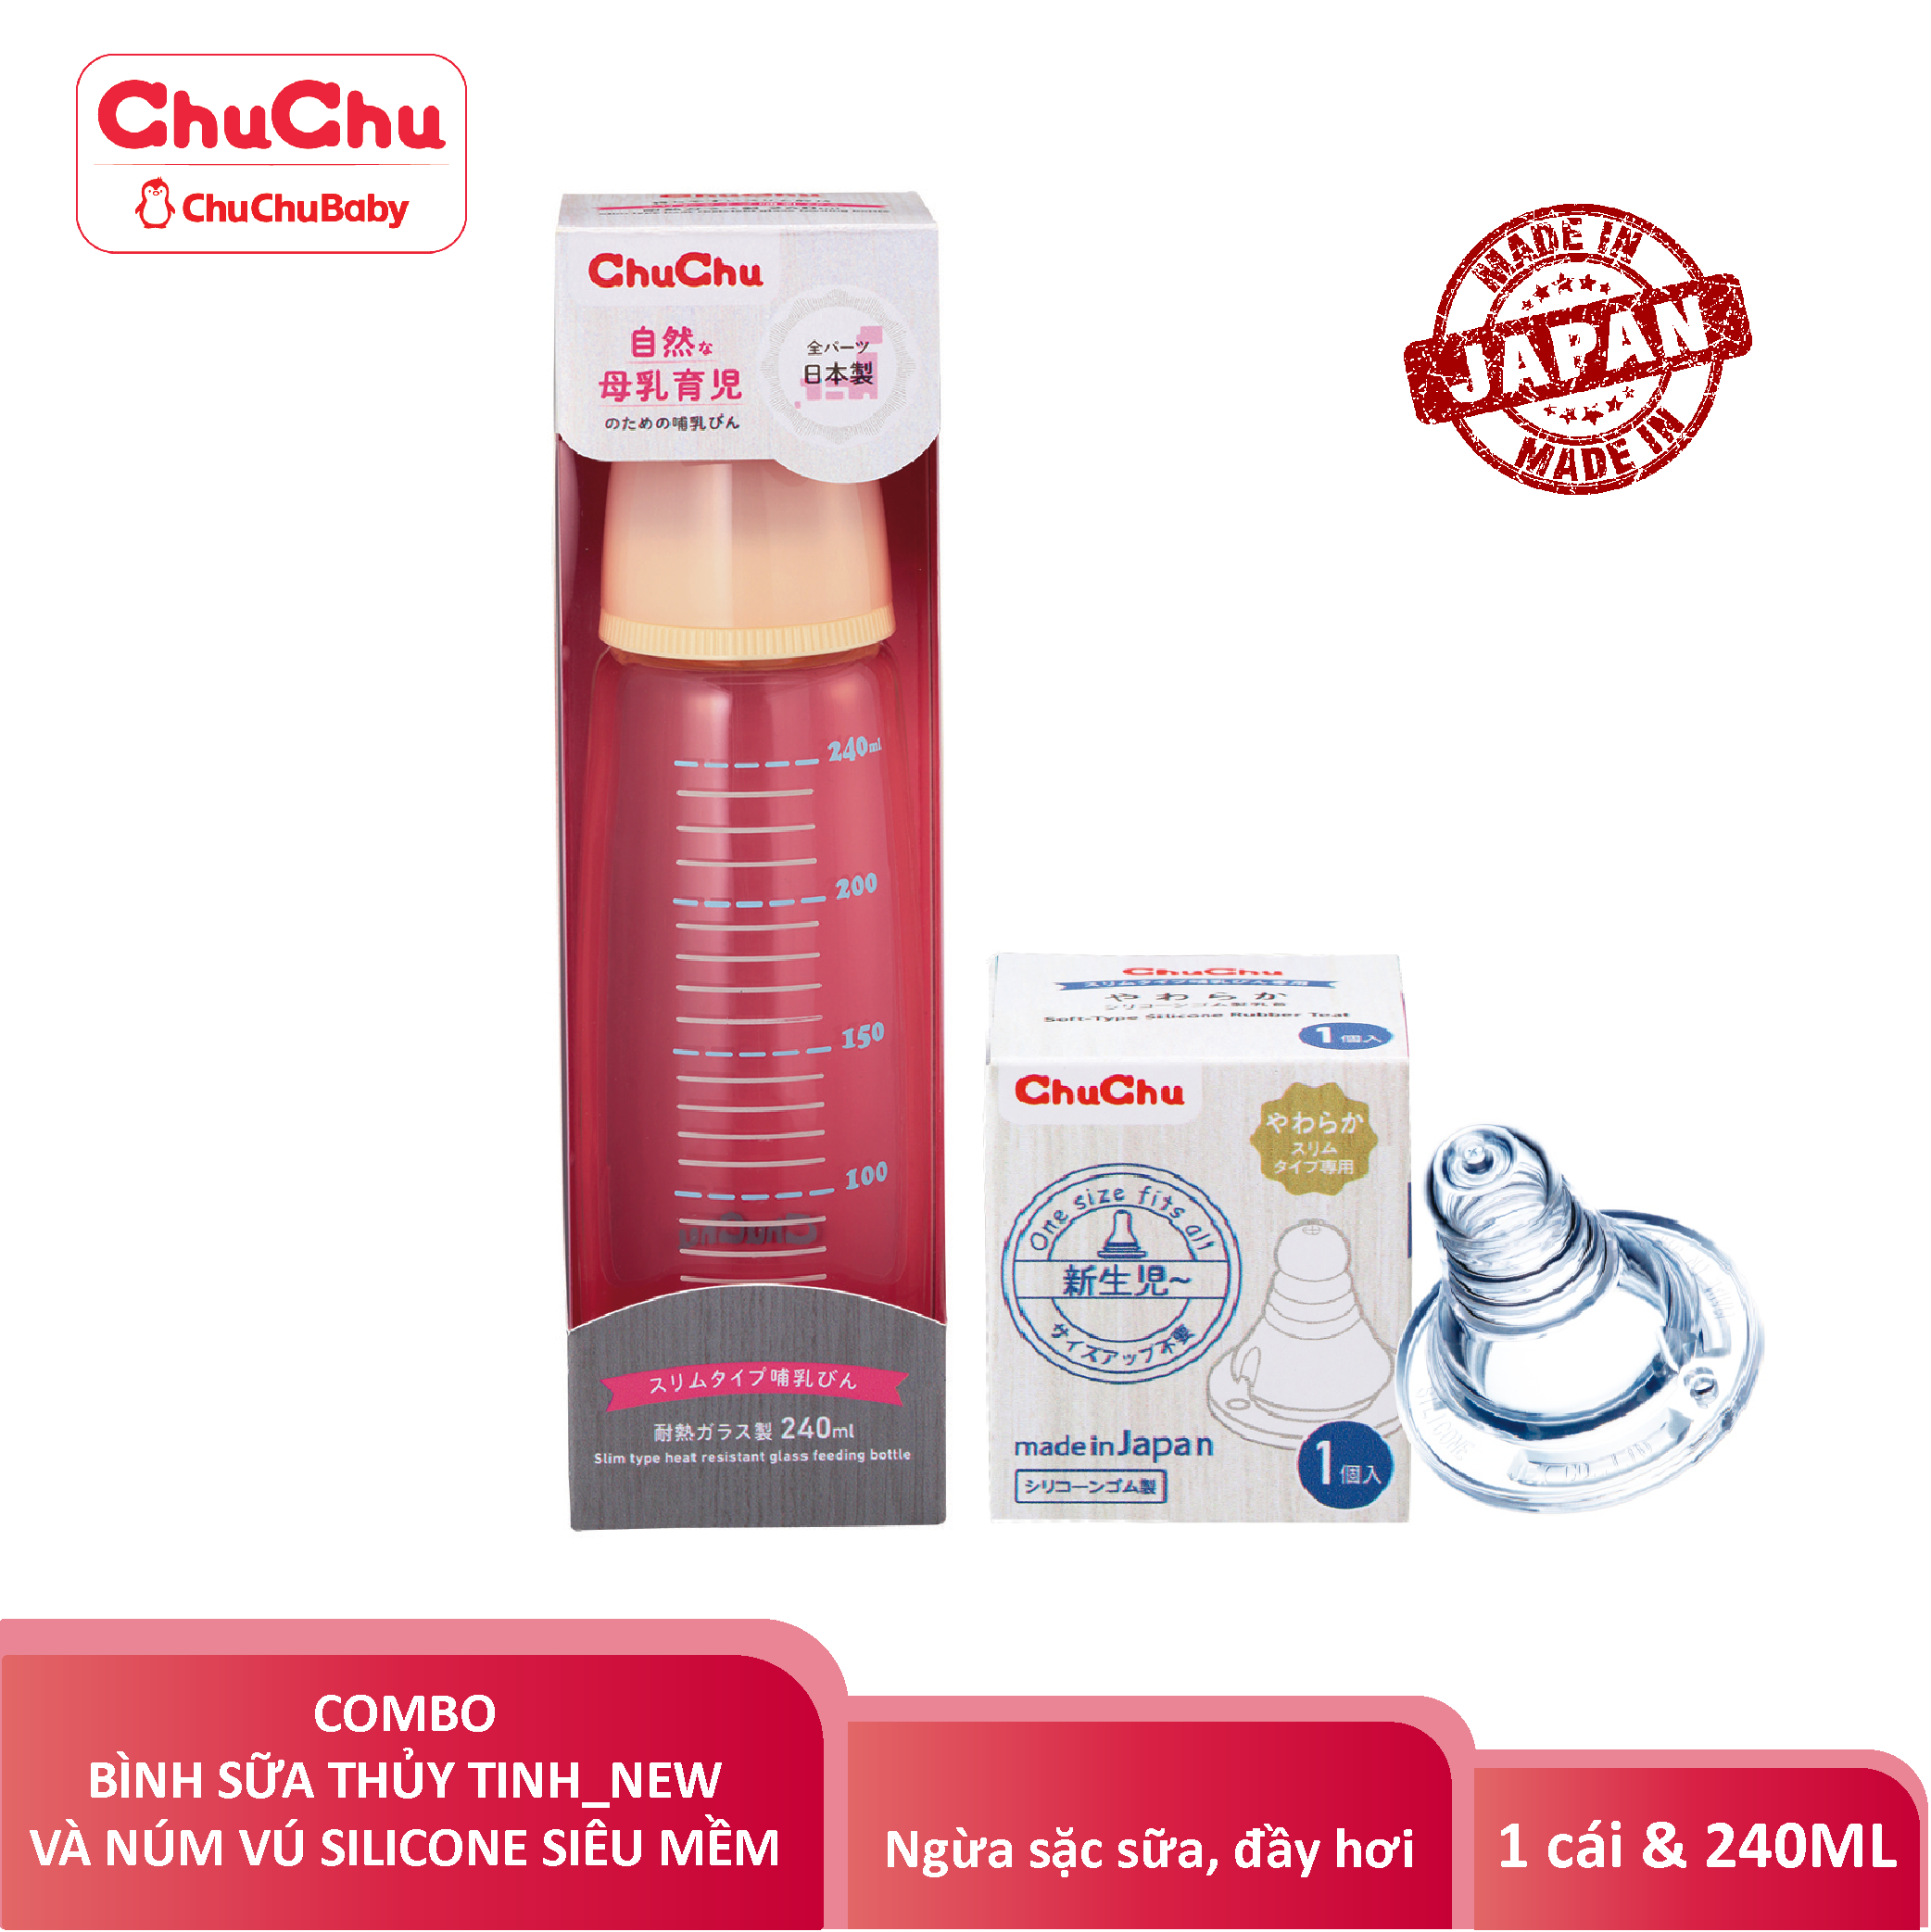 Combo : Bình Sữa Thủy Tinh G-240ml ChuchuBaby + 1 Núm vú silicon siêu mềm ( Box type, chống đầy hơi) ChuchuBaby